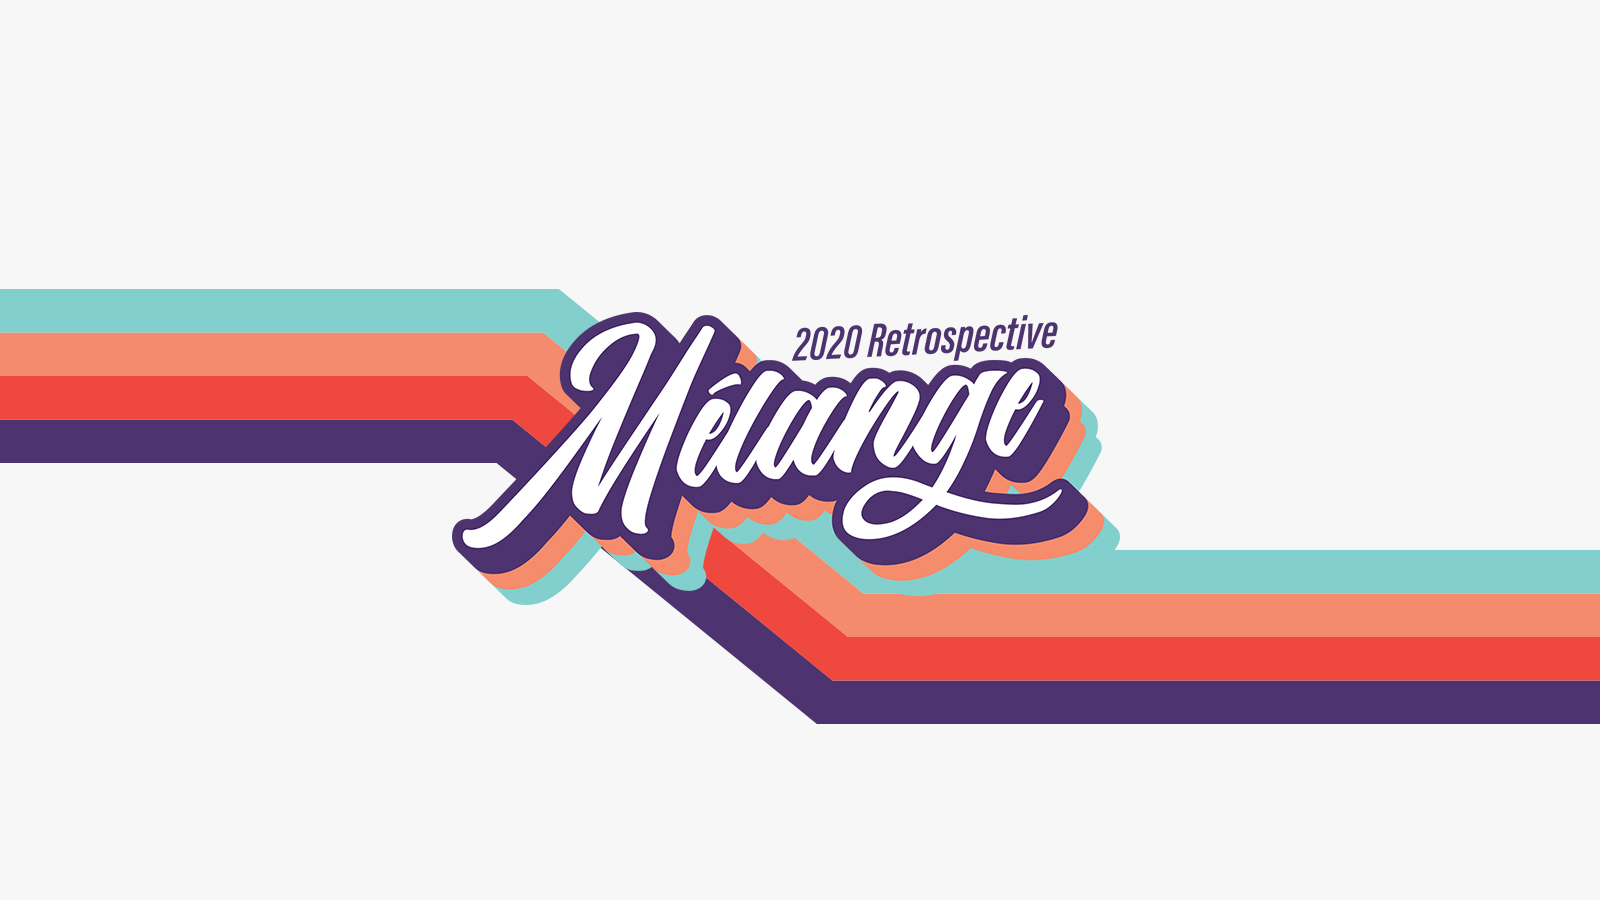 Melange 2020 – Banner